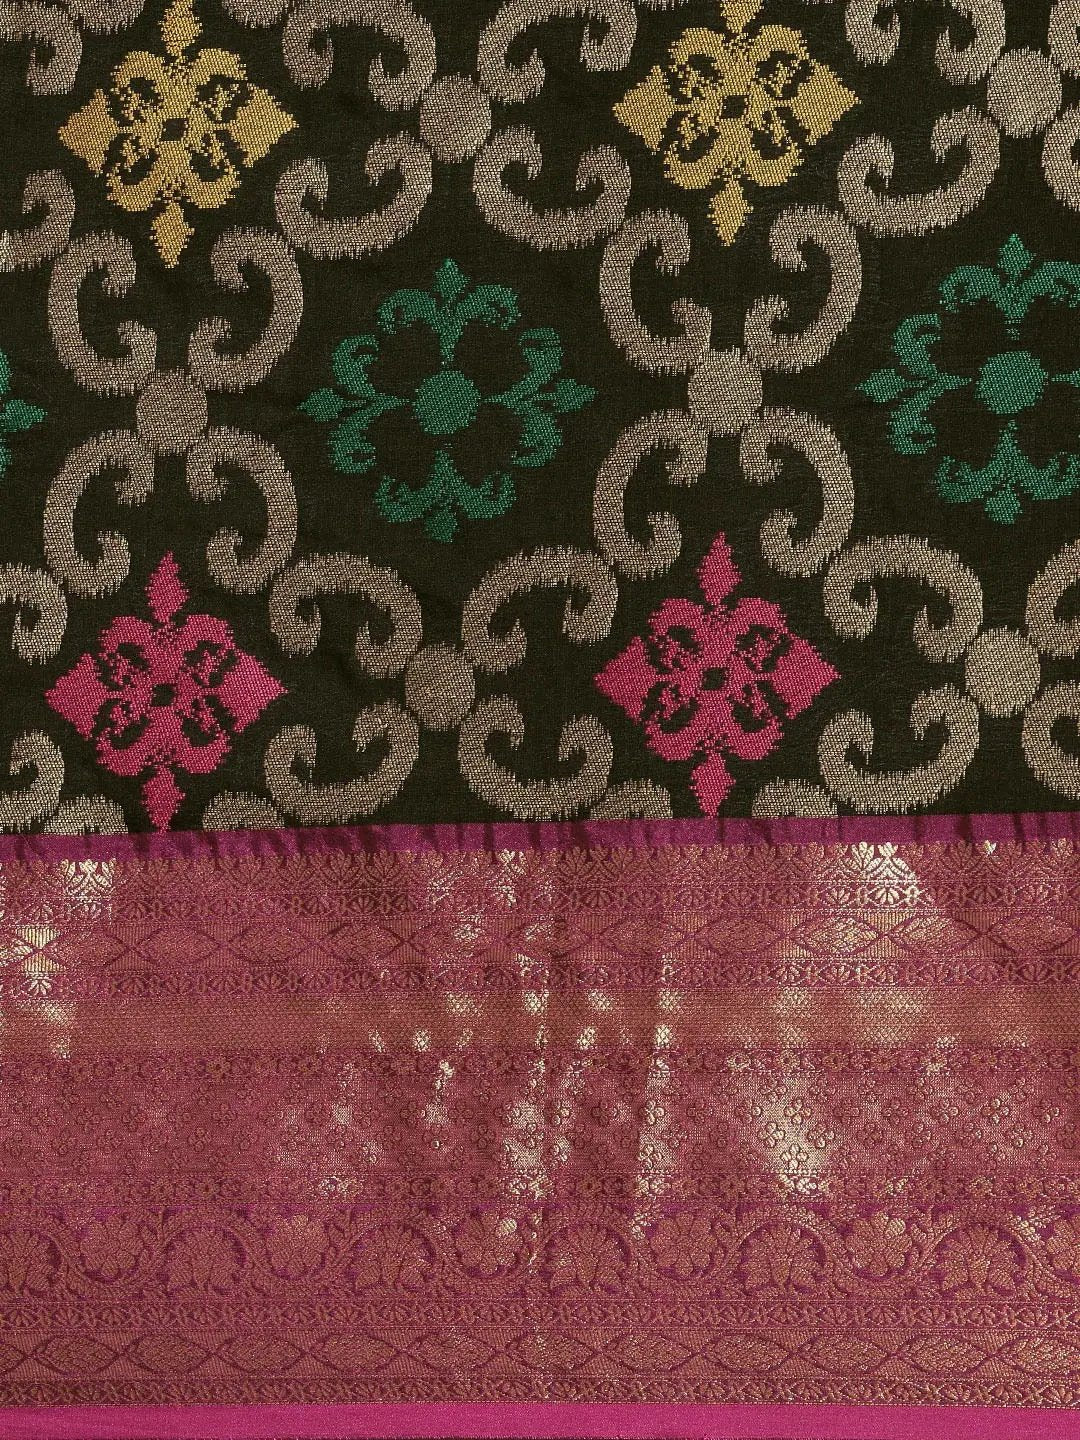  Dharmavaram Soft Silk Festive Wear Saree